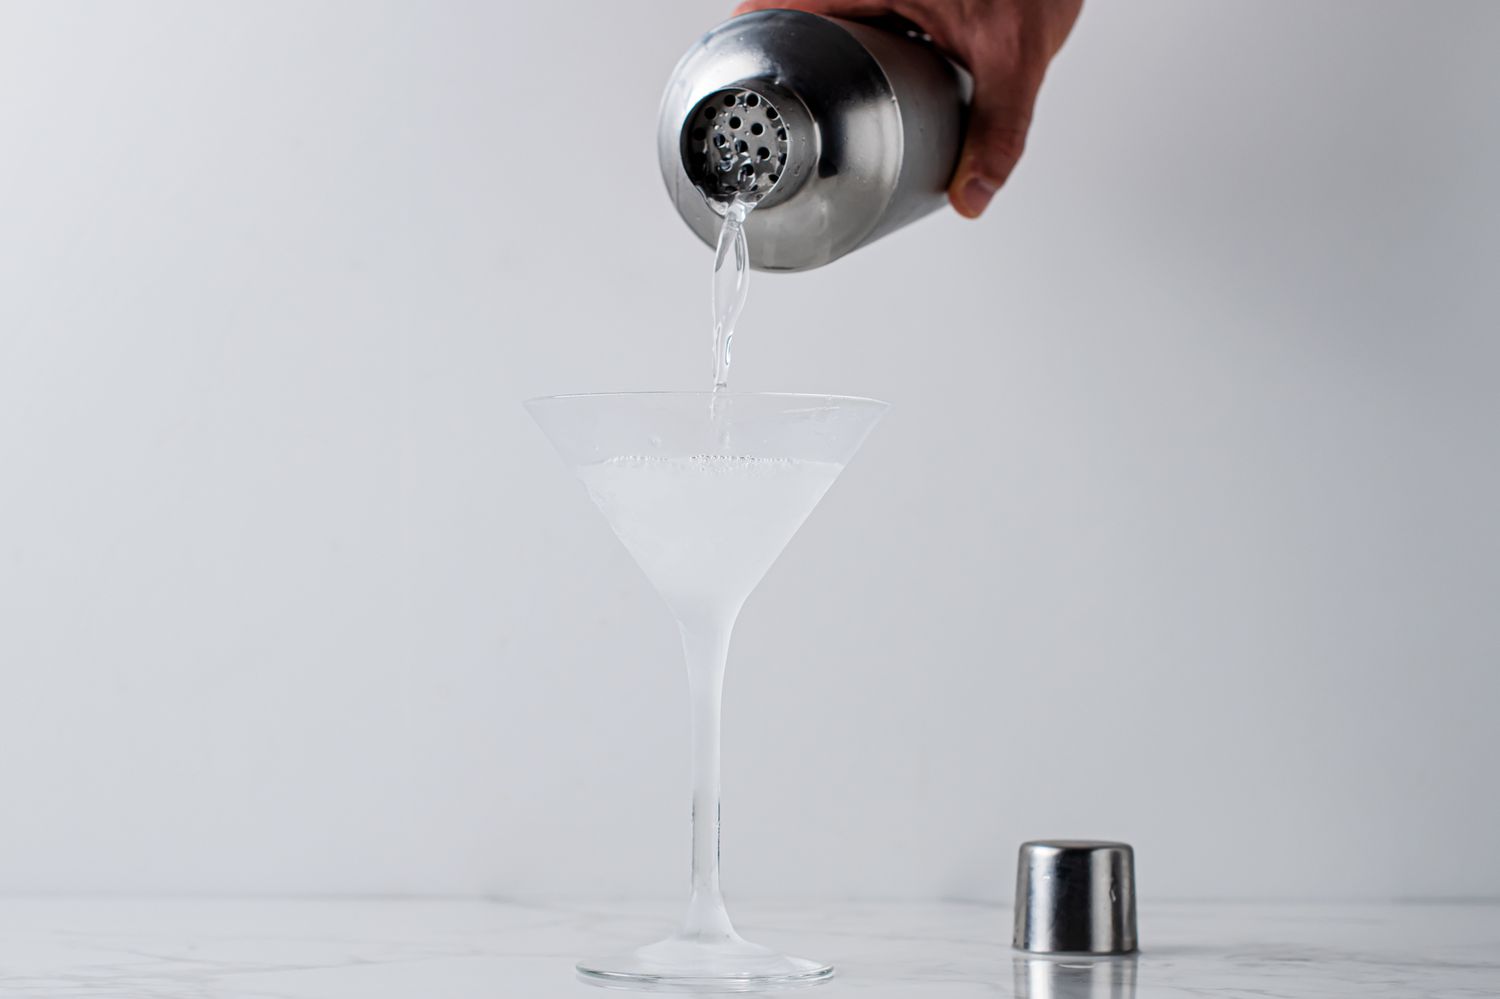 Straining the Vesper martini into a glass